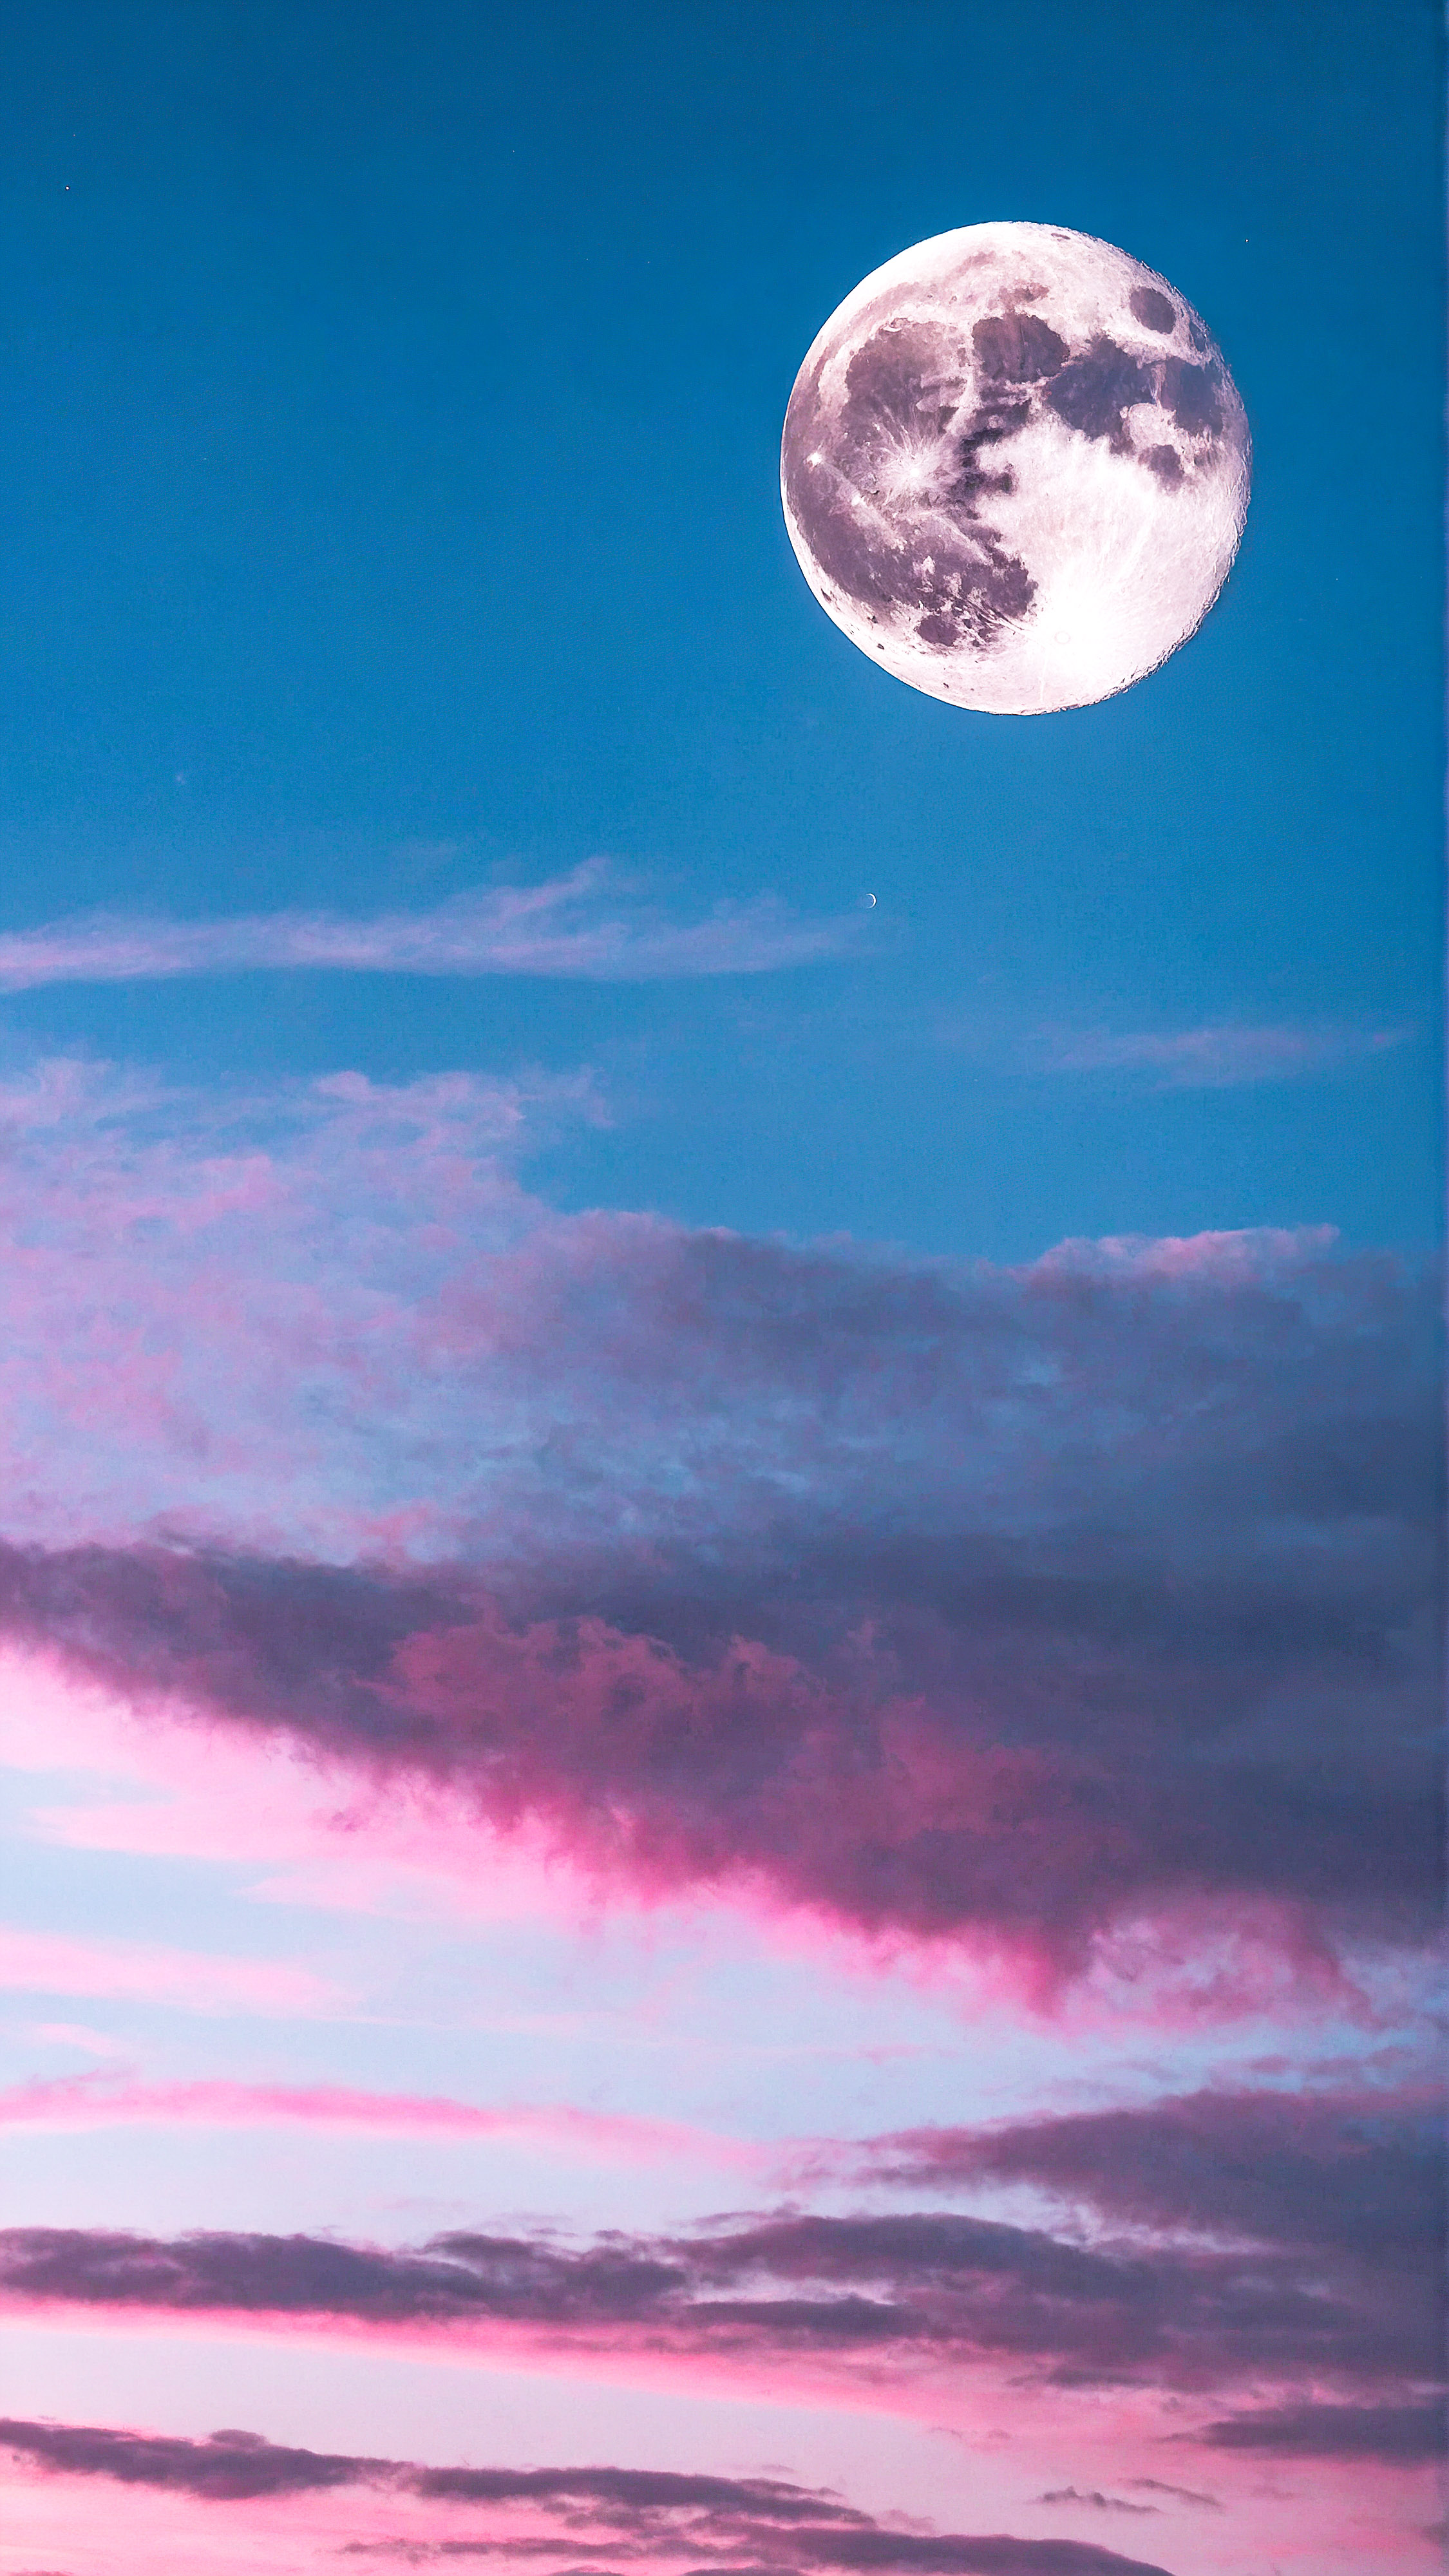 Expérimentez la tranquillité d'un ciel passant du bleu au rose avec des nuages duveteux et une pleine lune claire avec notre économiseur d'écran mignon pour iPhone.